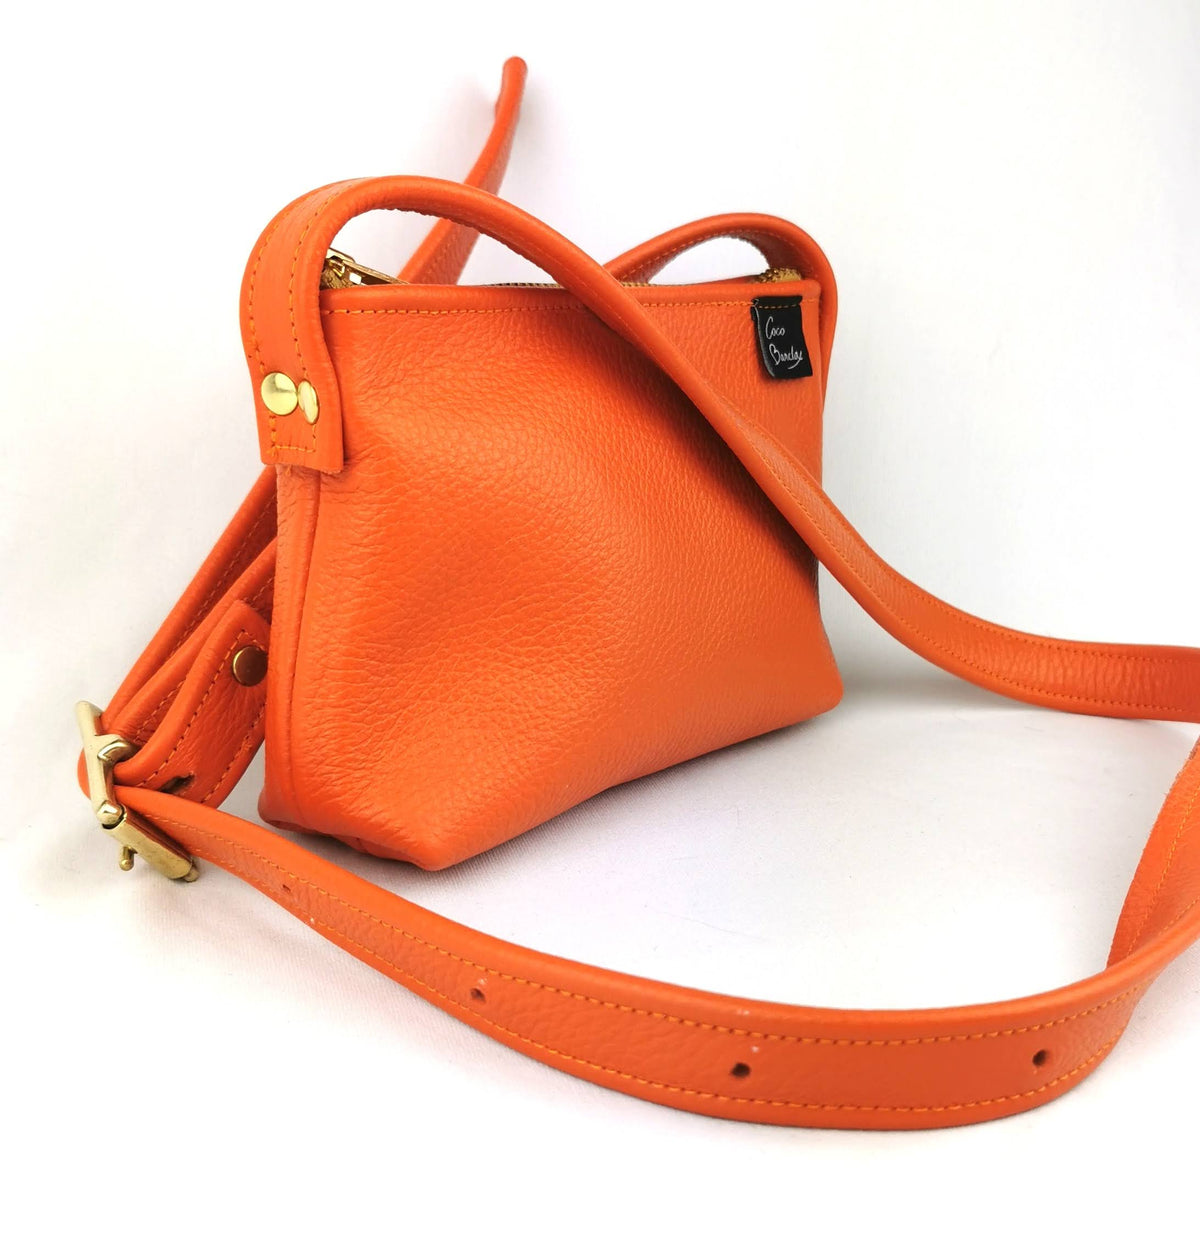 Hybrid bag in orange